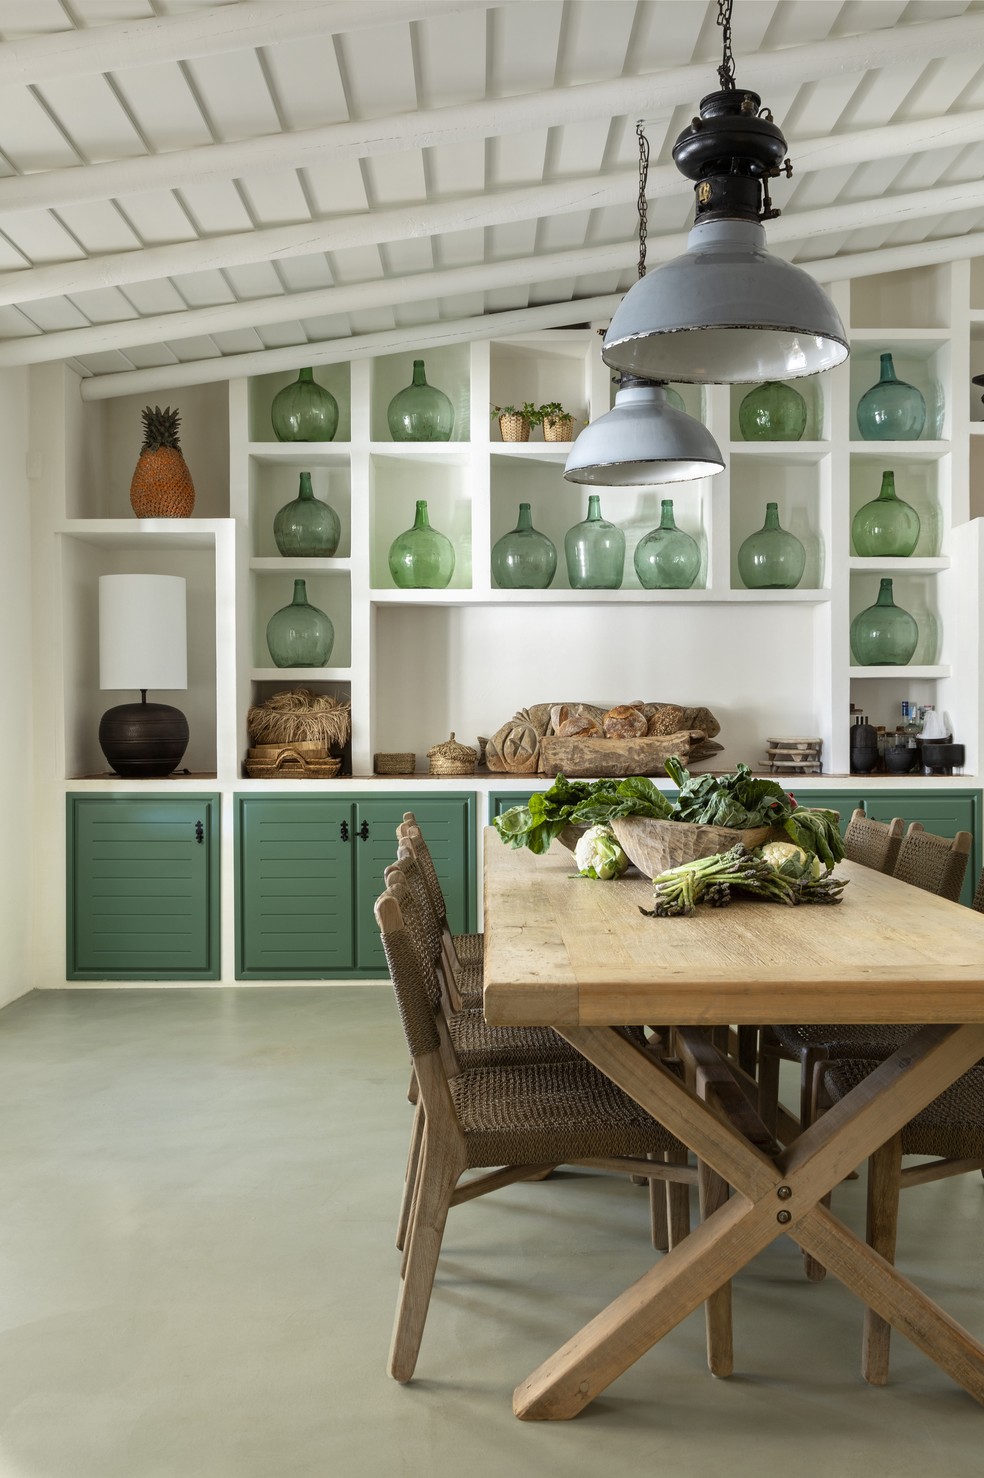 Conectada com a sala de jantar, parte da cozinha marca pela marcenaria com acabamento em verde e as garrafas artesanais do mesmo tom, produzidas no Algarve — Foto: José Manuel Ferrão